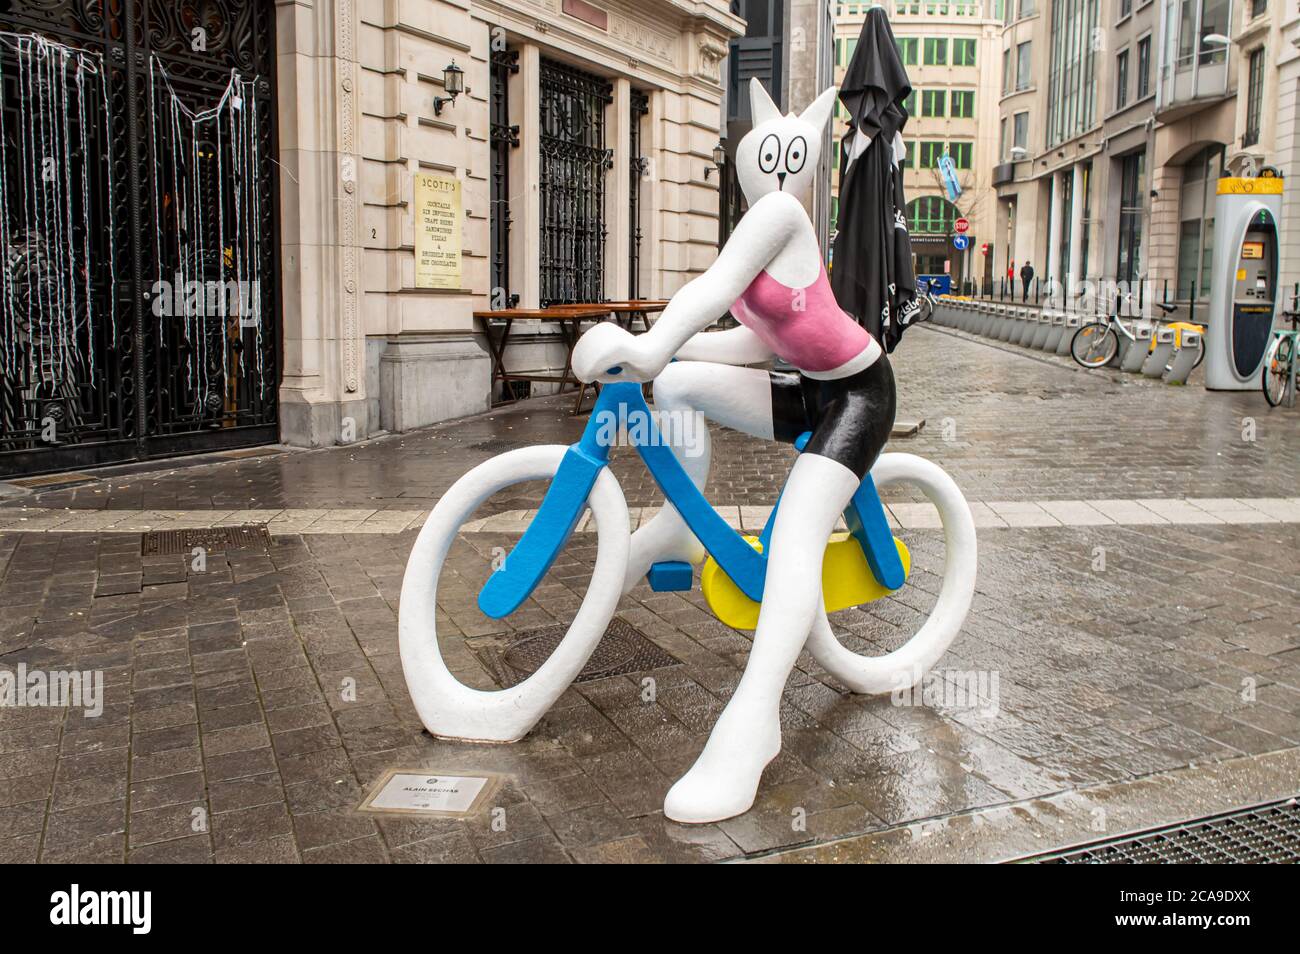 BRUXELLES, BELGIO - 1 GENNAIO 2019: Il gatto su una scultura in bicicletta vicino alla Galerie de la Reine a Bruxelles il 1 gennaio 2019. Foto Stock